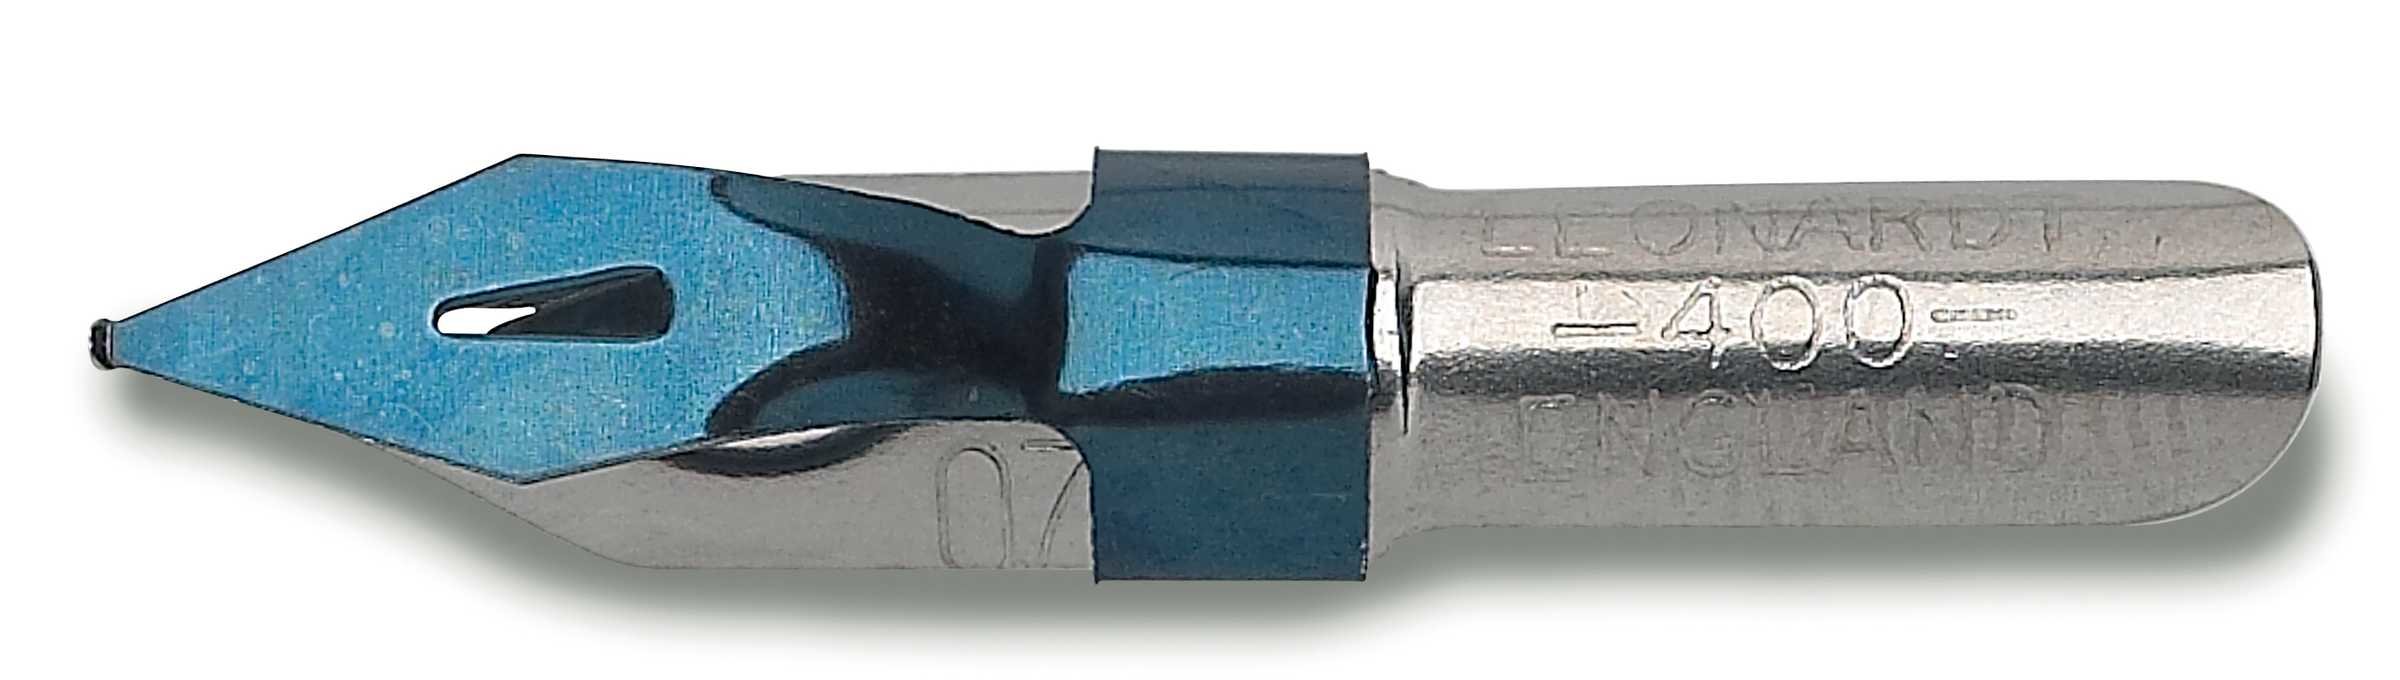 Перо для орнамента ORNAMENTAL полированное, линия 0,75мм по 99.00 руб от Manuscript pen company